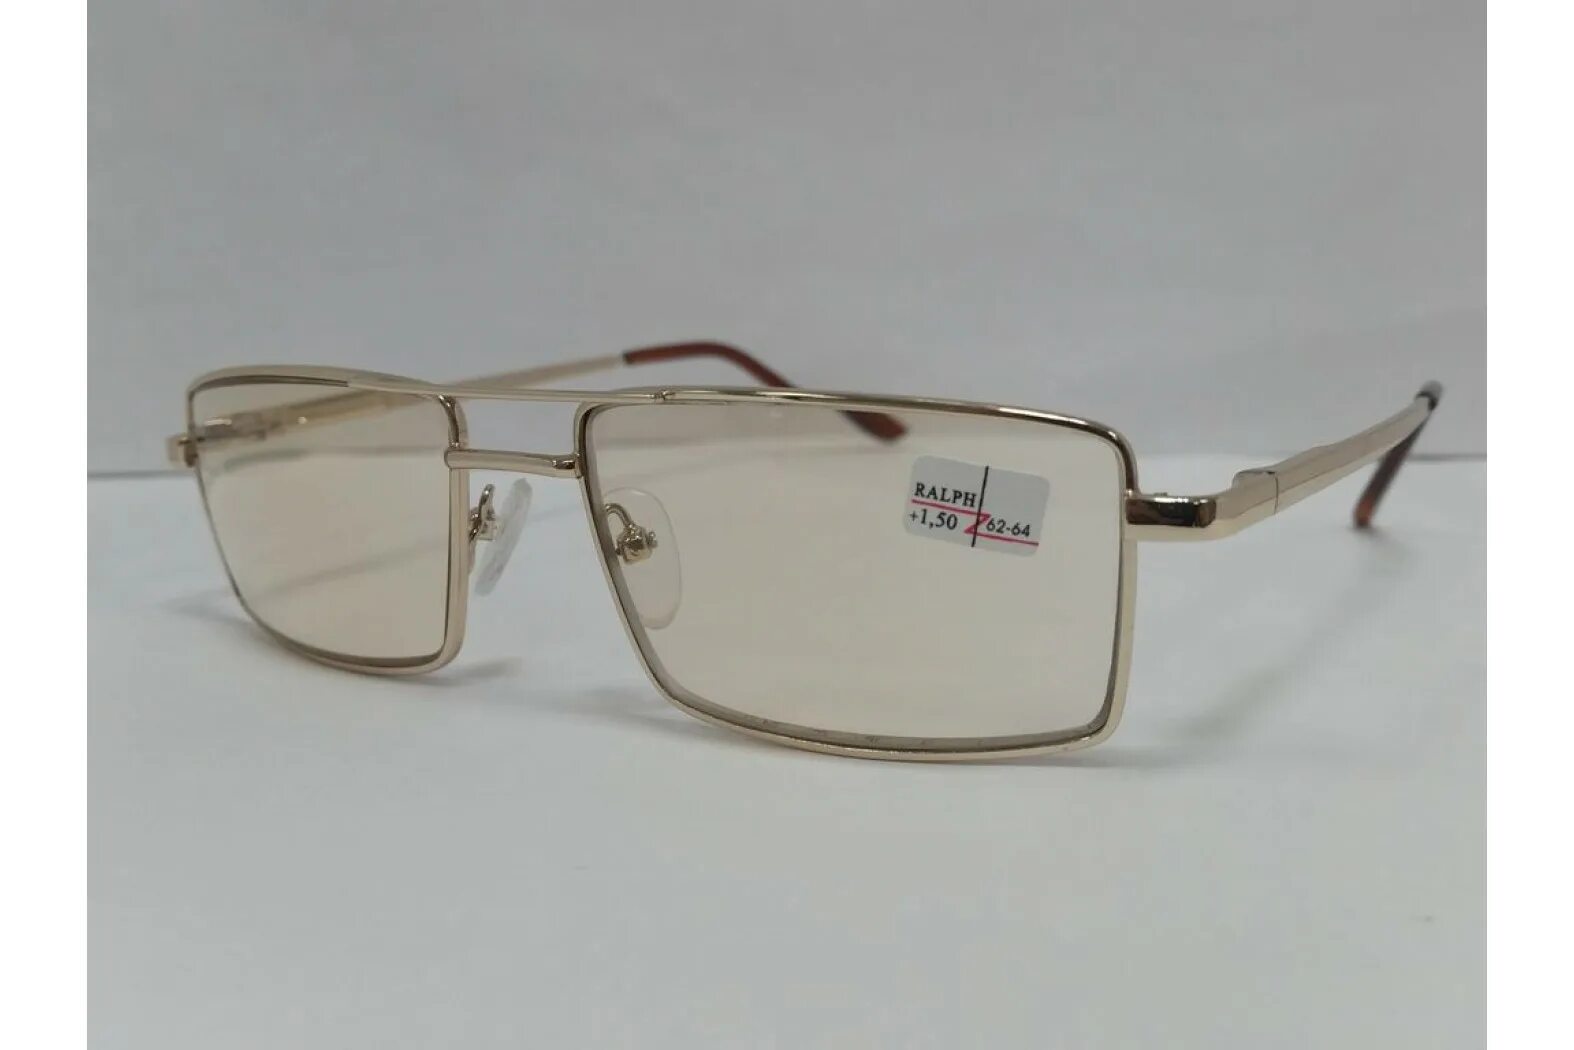 Очки Ральф для зрения тонированные. Очки хамелеоны фотохромные очки. Zen очки хамелеон 1900 h. Очки хамельны стекло 62-64мм. Очки хамелеоны можно